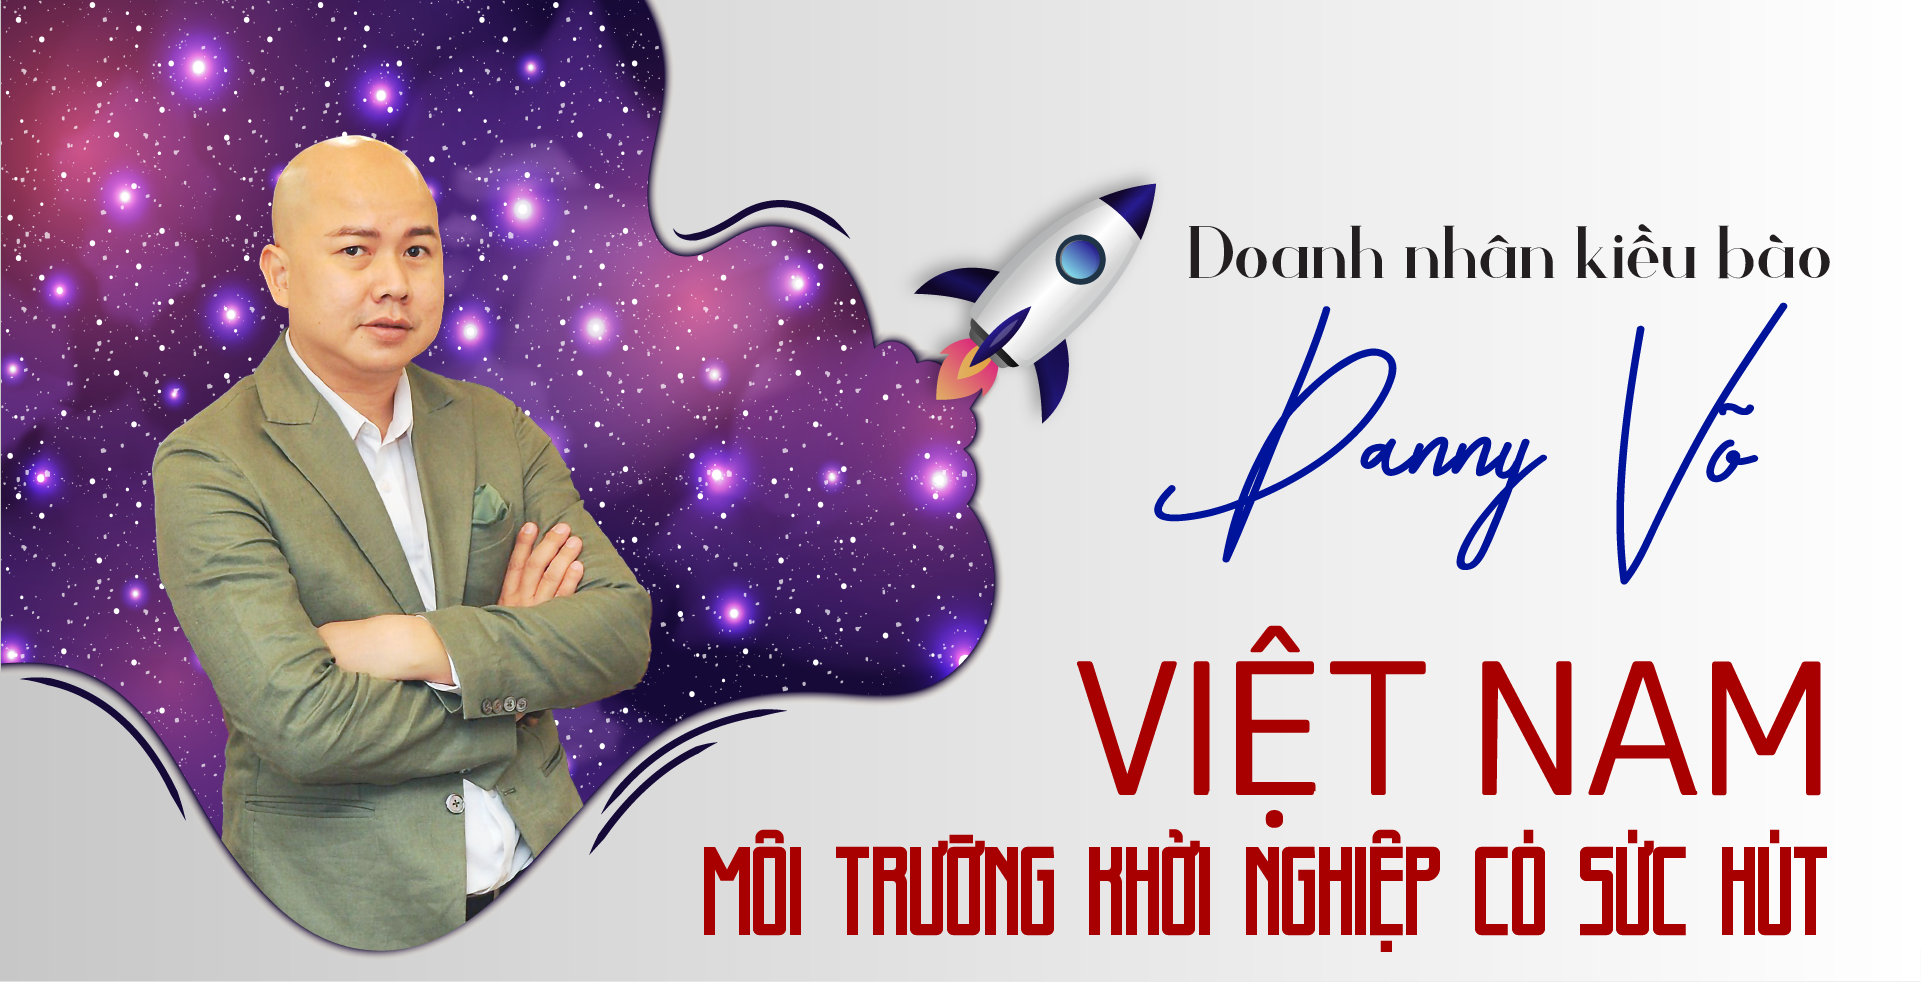 Doanh nhân kiều bào Danny Võ: Việt Nam là môi trường khởi nghiệp có sức hút - Ảnh 1